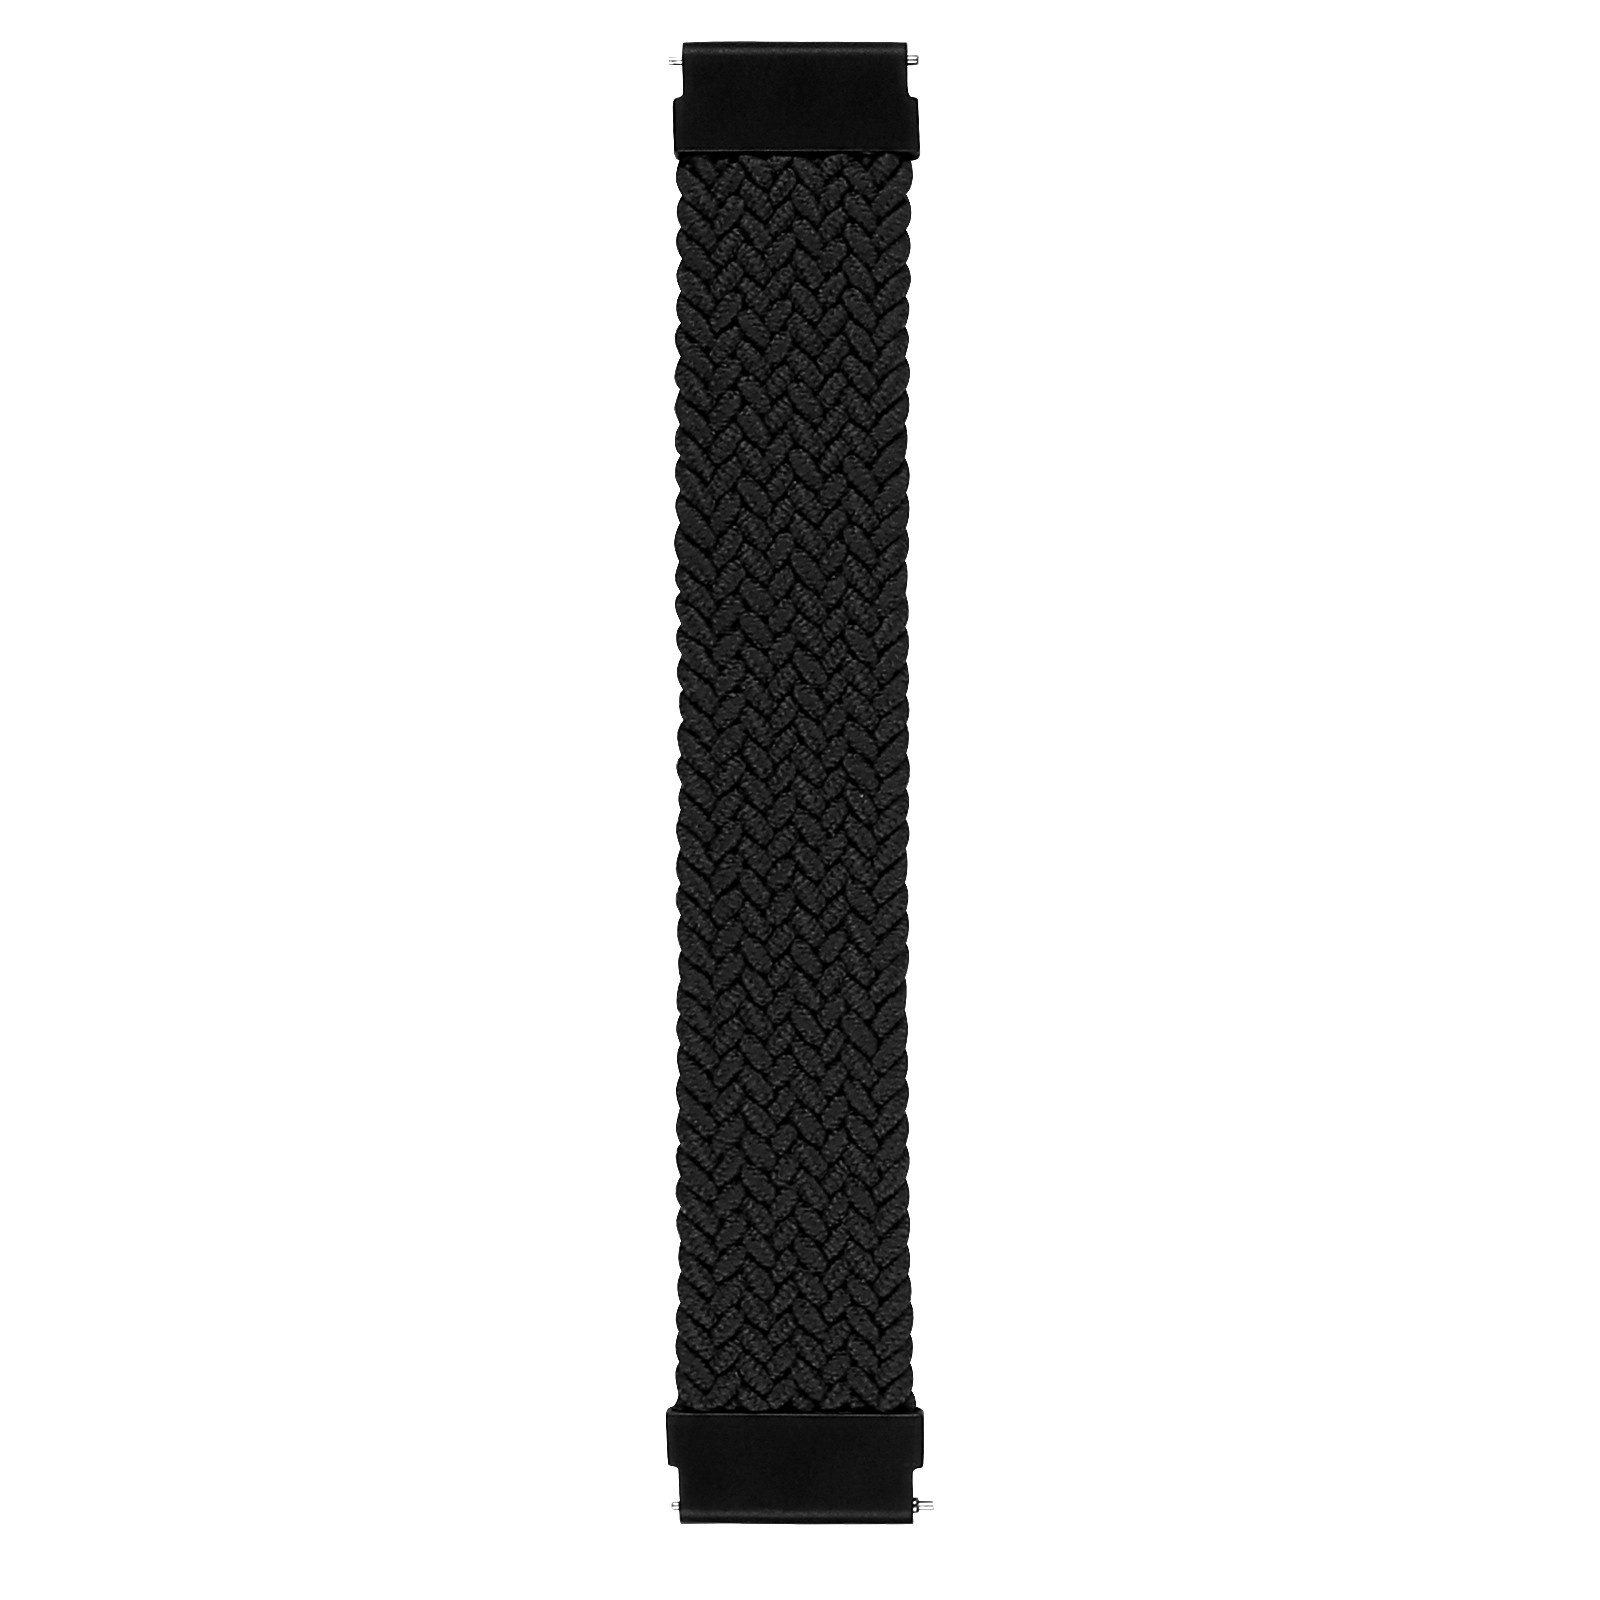 Cinturino Solo intrecciato in nylon per Huawei Watch GT - nero